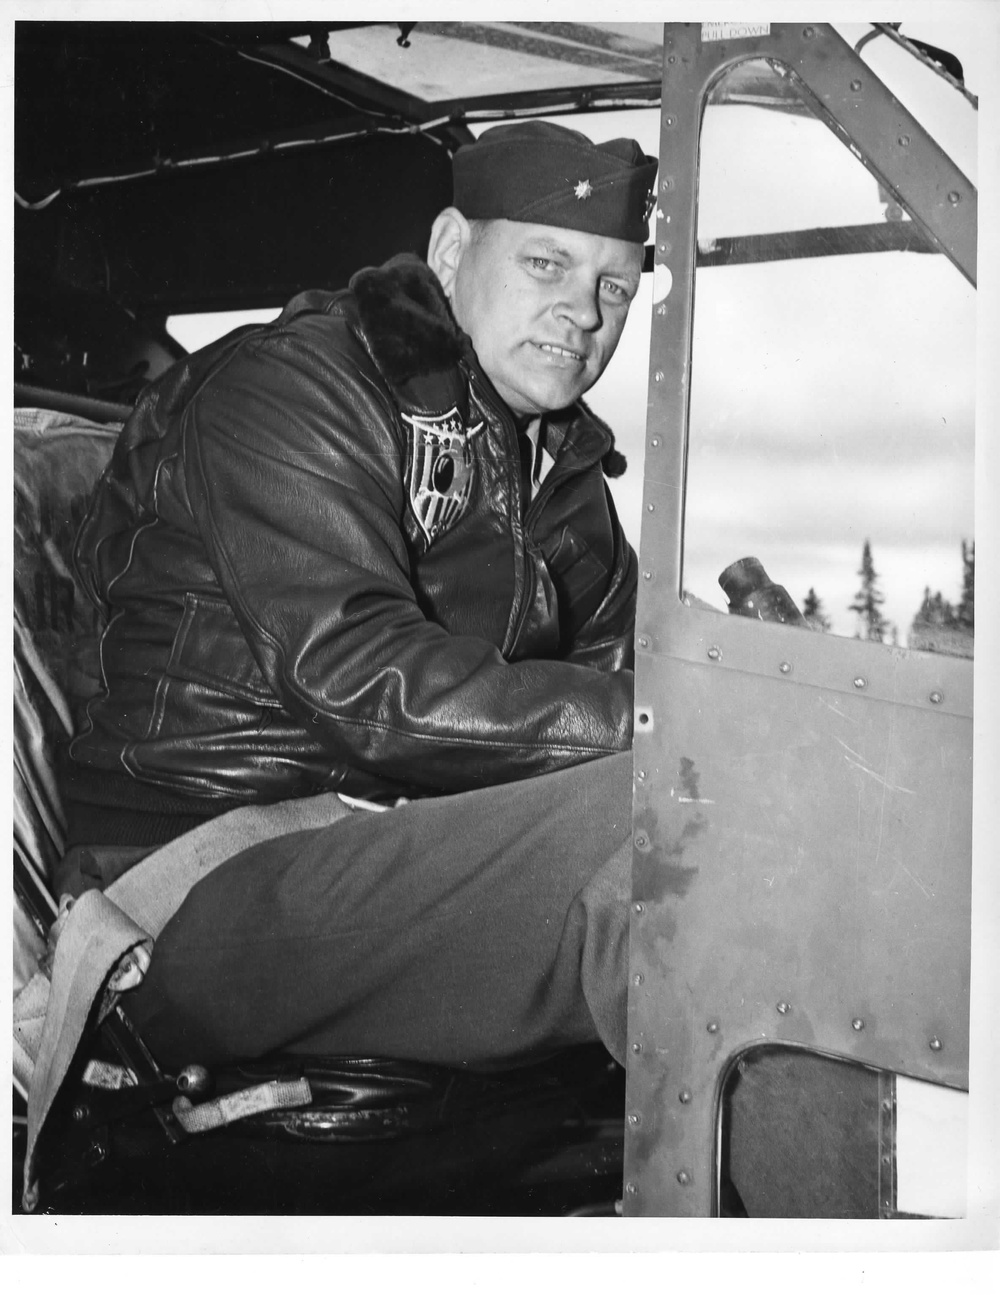 Cmdr. Frank Erickson in the cockpit